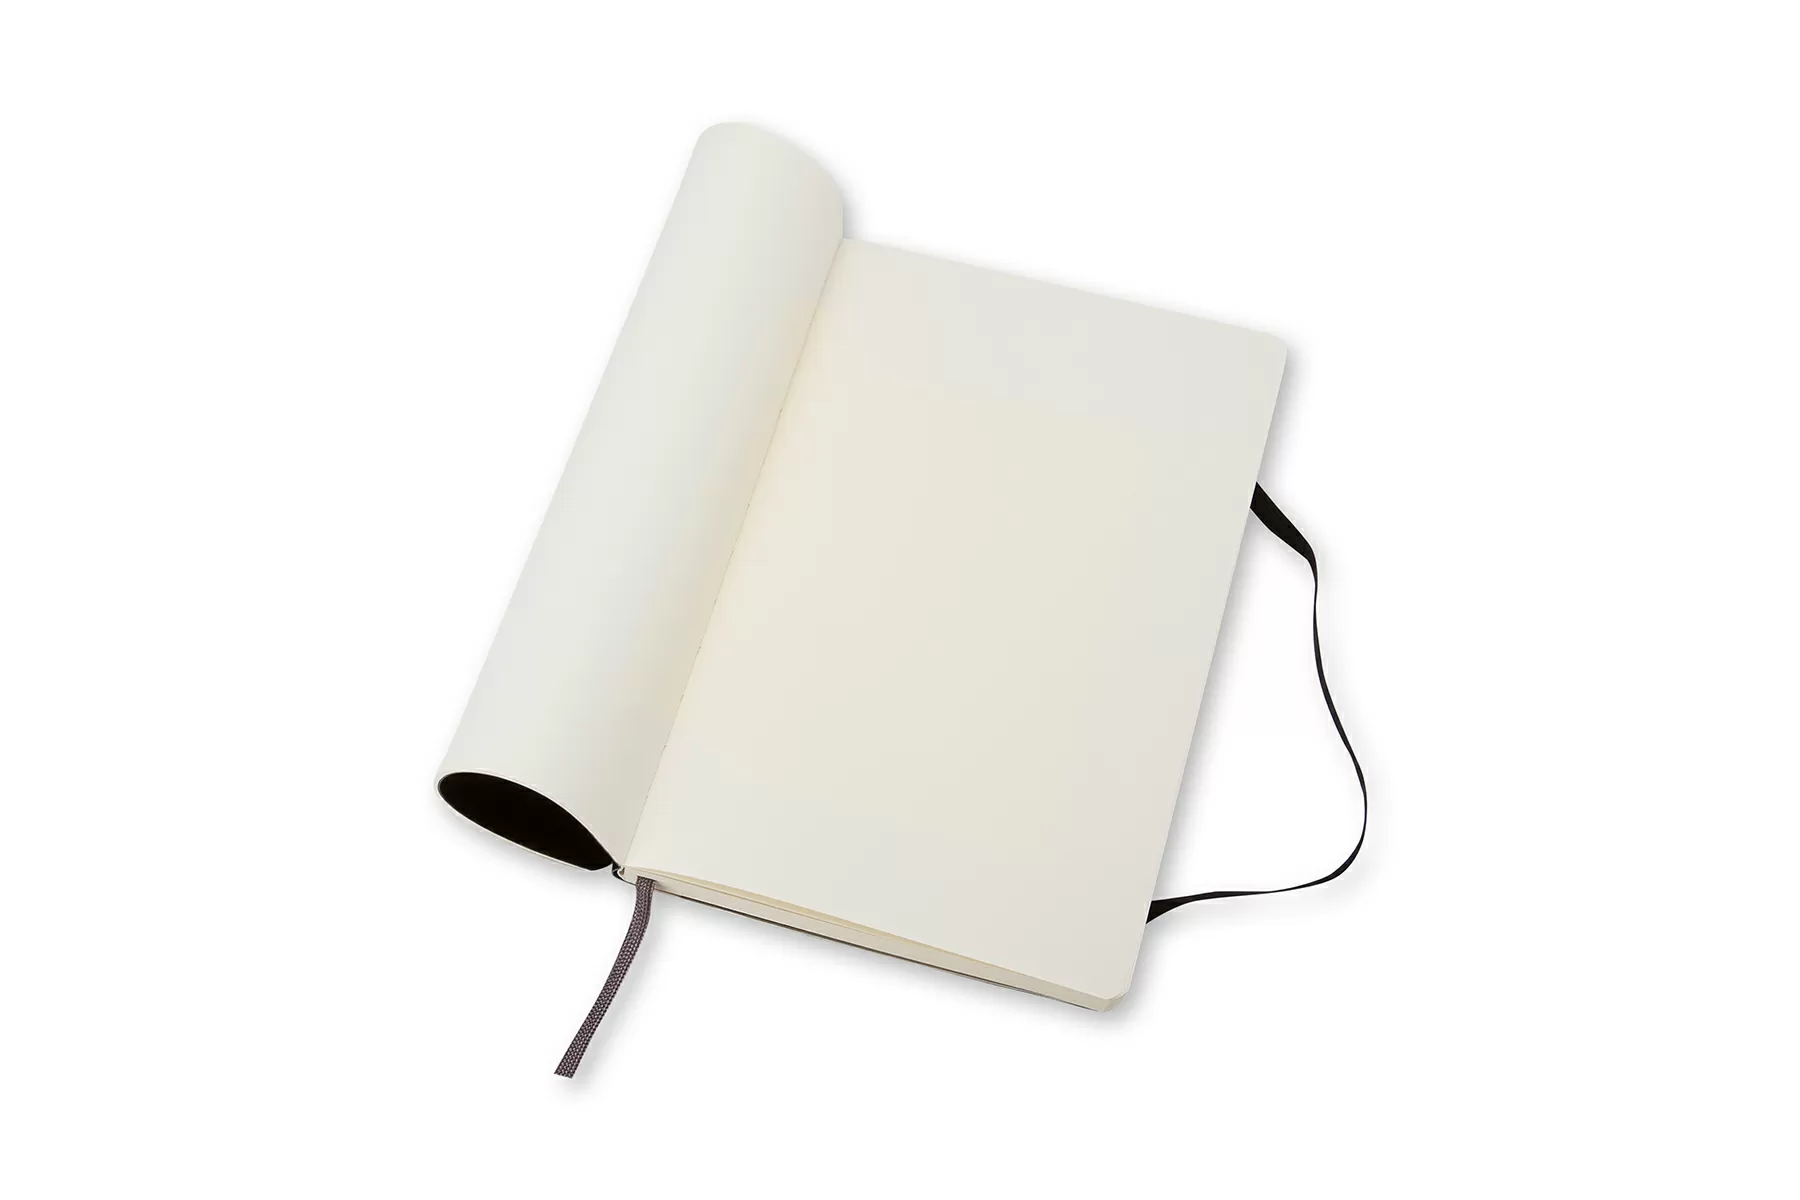 Записная книжка Classic Soft (нелинованная) Large коричневый